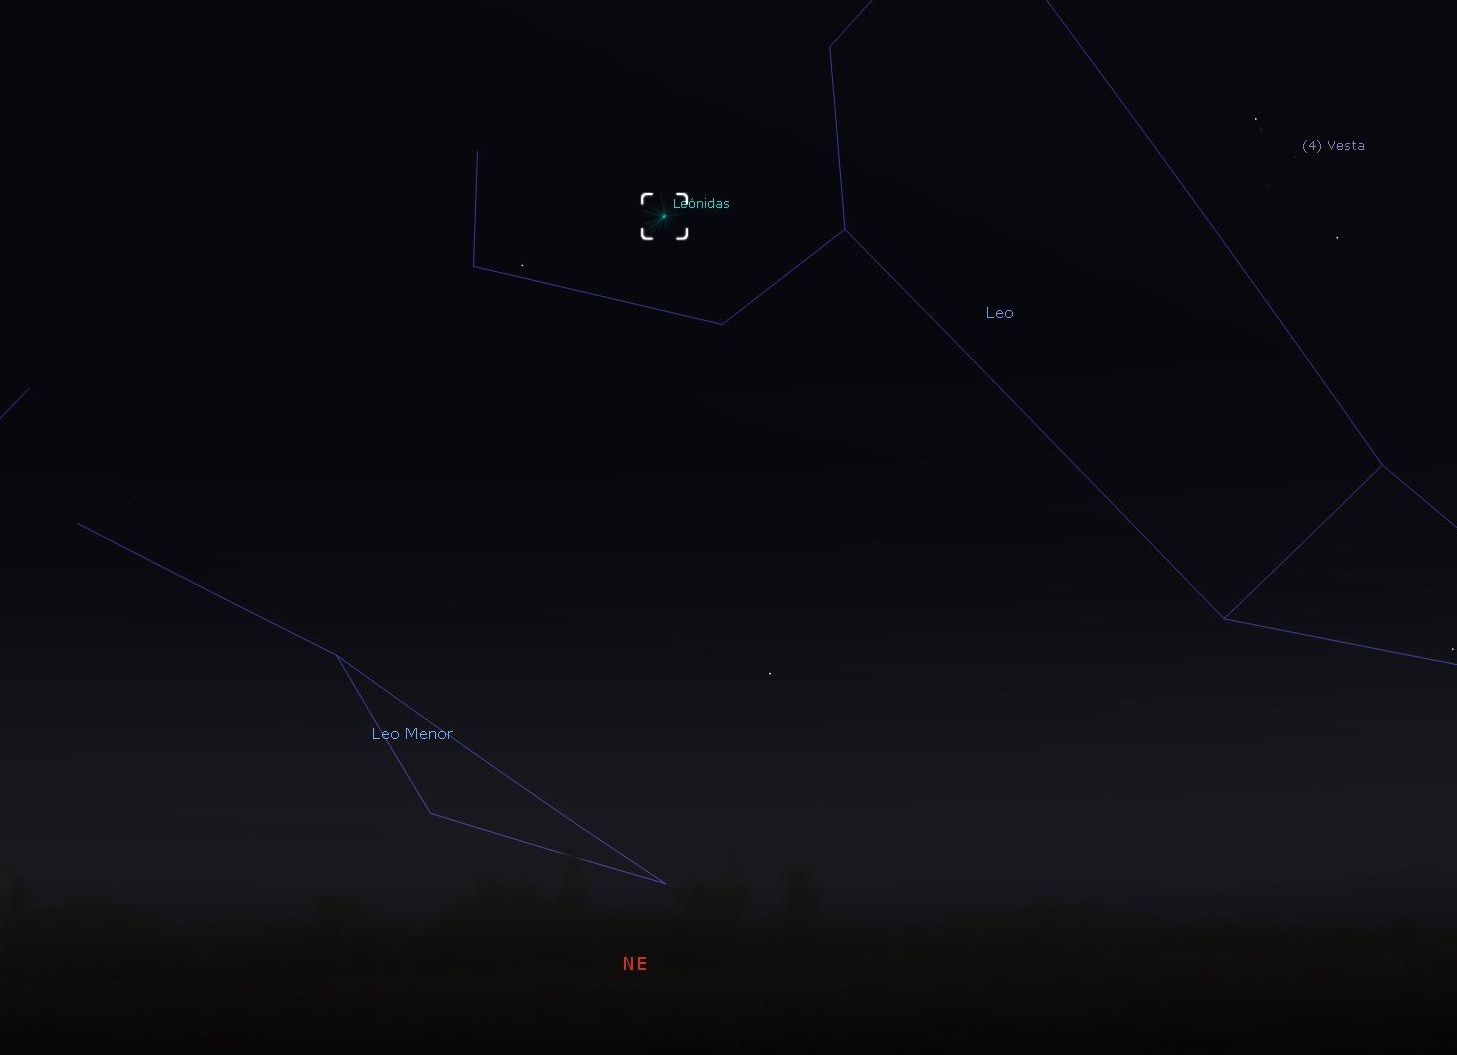 Imagen tomada del software Stellarium, centrada en la Ciudad de Buenos Aires para el 17 de Noviembre del 2020 a las 04:00 hs, Hora Oficial Argentina, hacia el Noreste. Leónidas en el centro del recuadro blanco